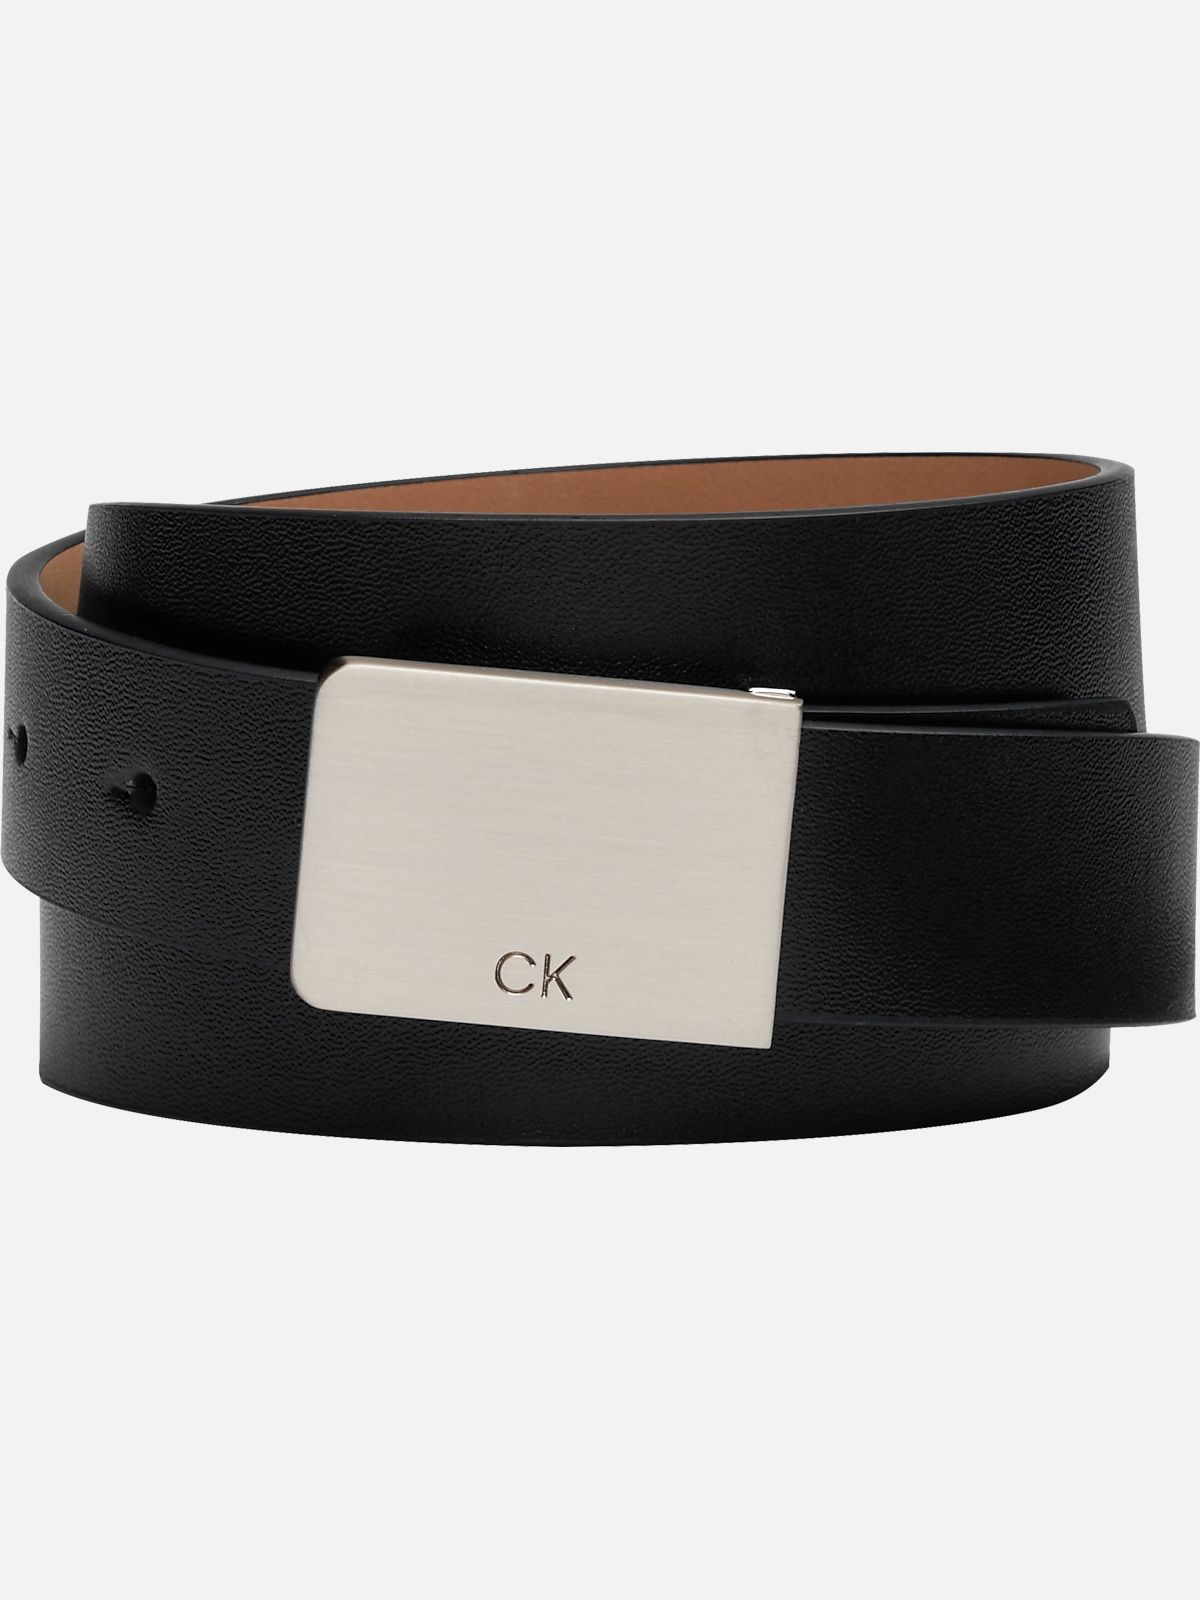 Calvin Klein Plaque Buckle Belt | Belts & Suspenders| Men's